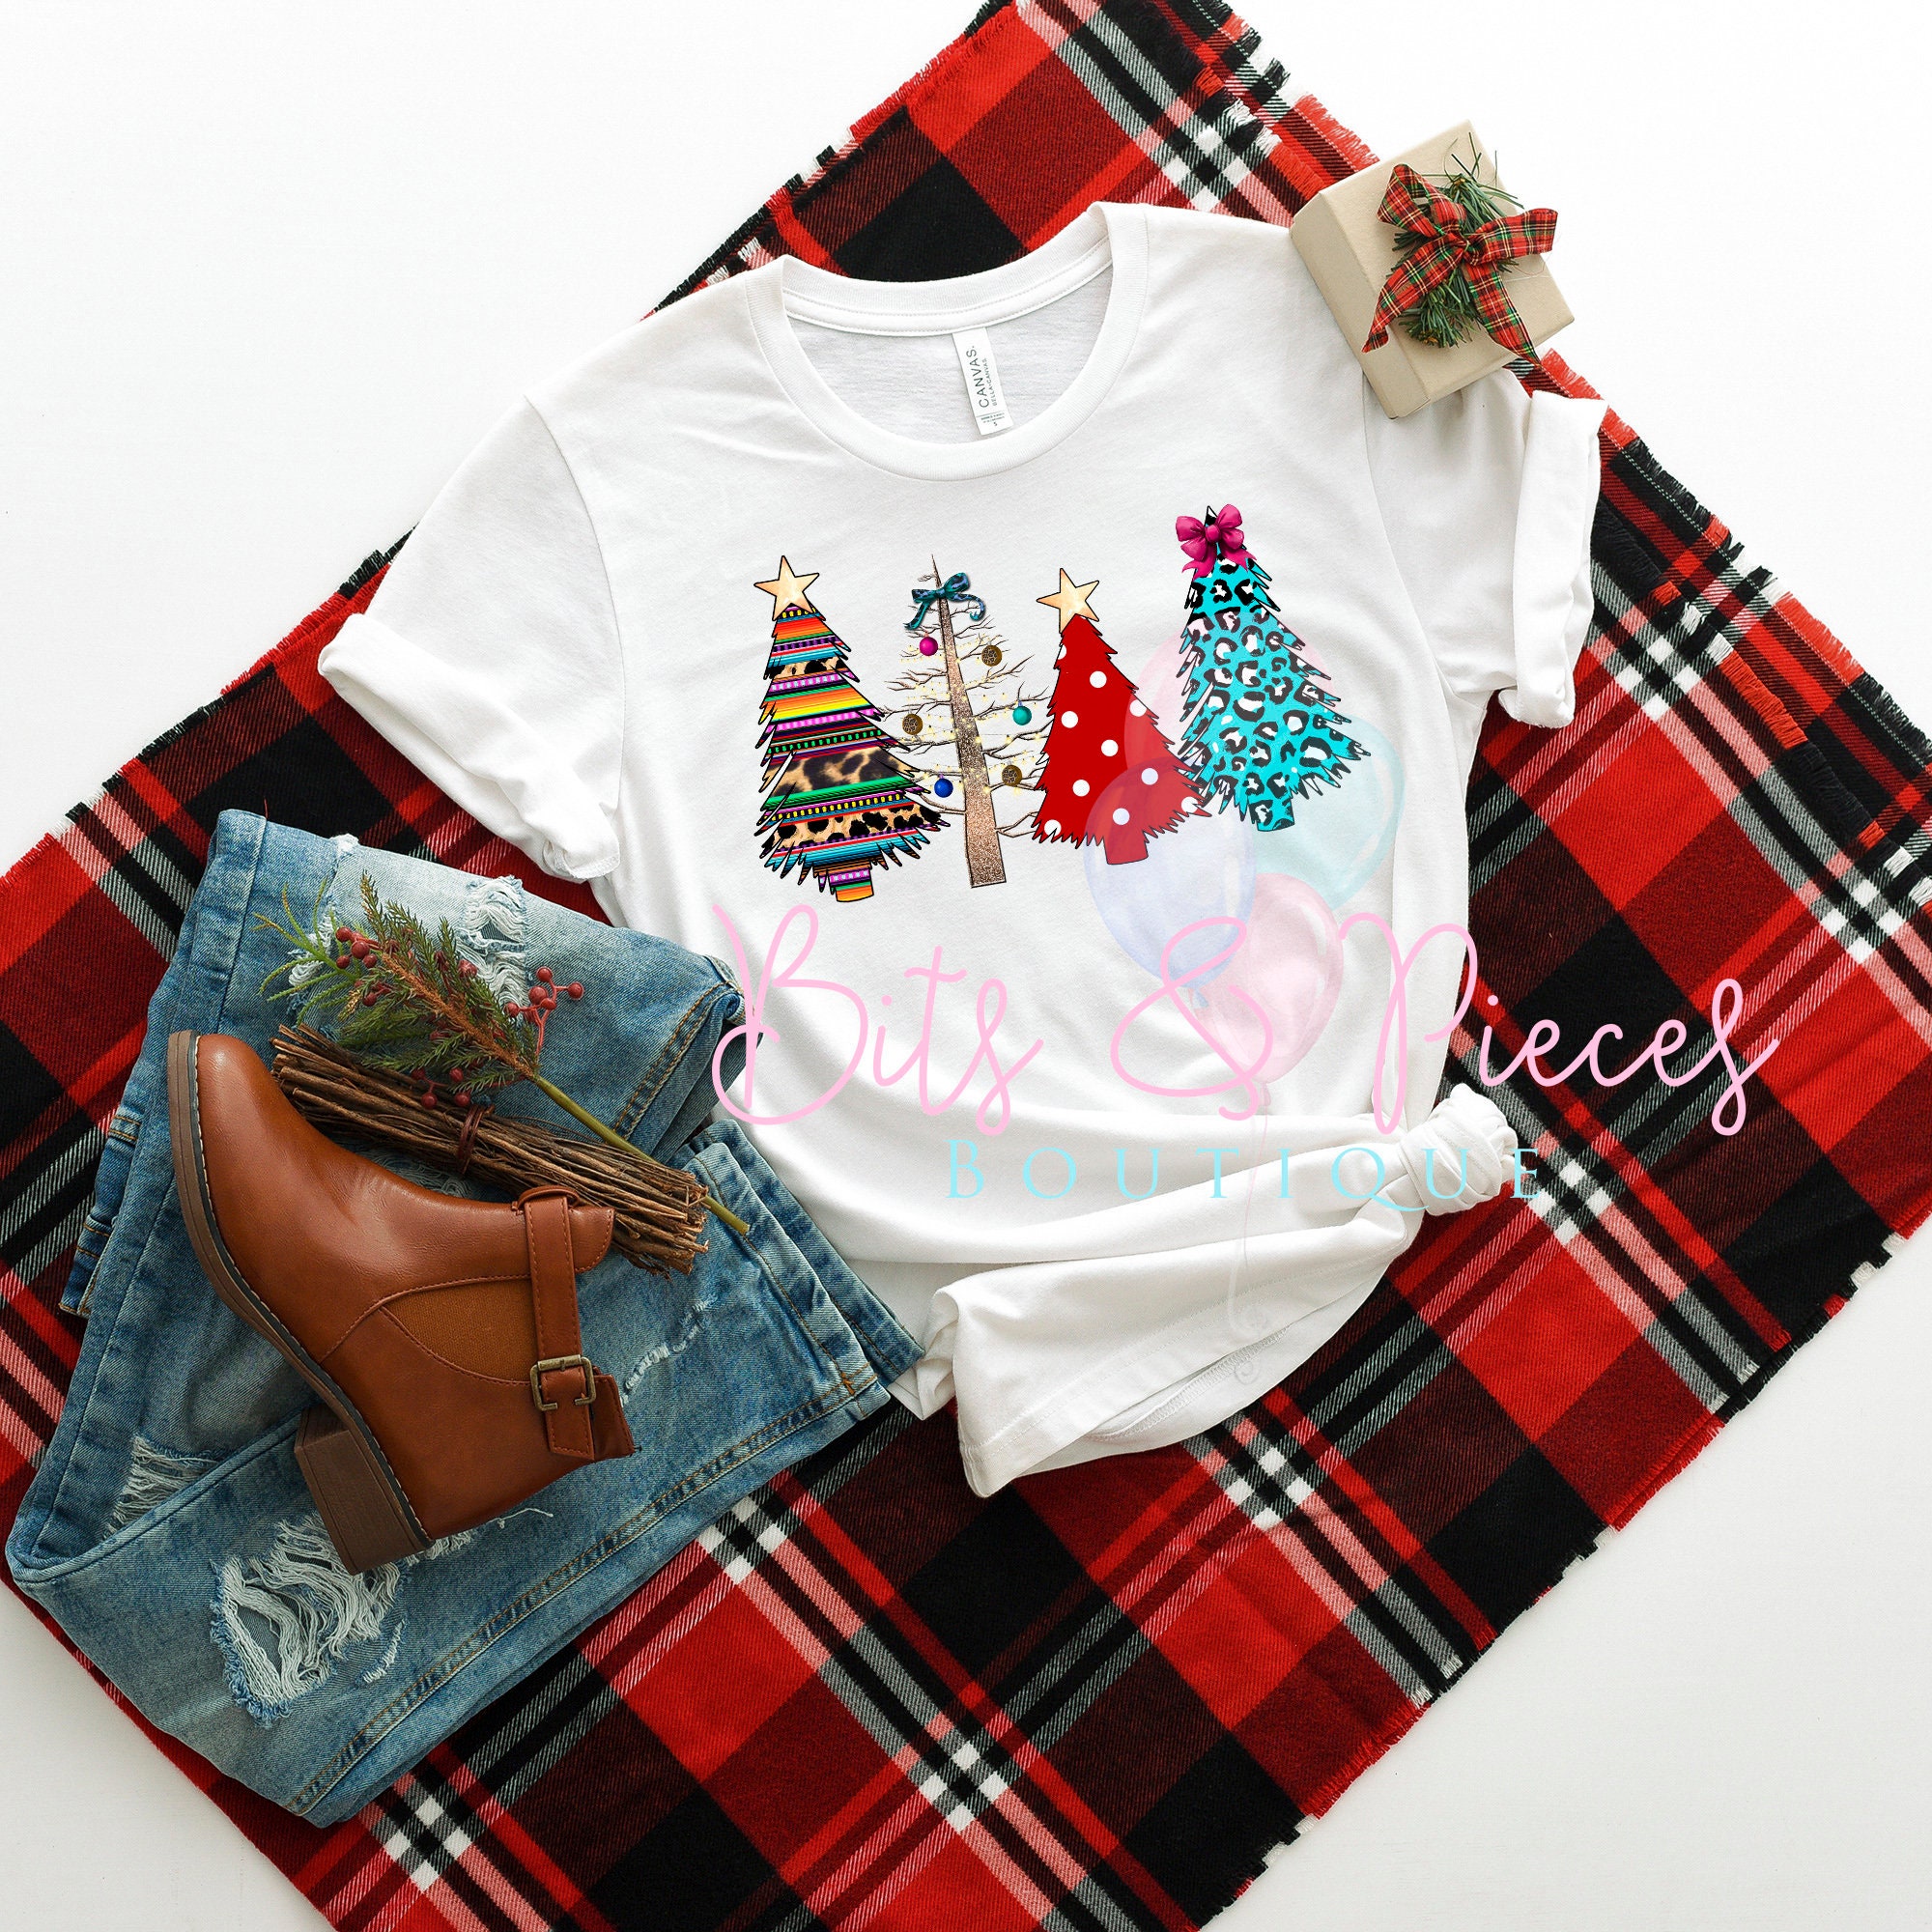 Wild Serape and Polka Dot Christmas Tree Shirt Christmas | Etsy